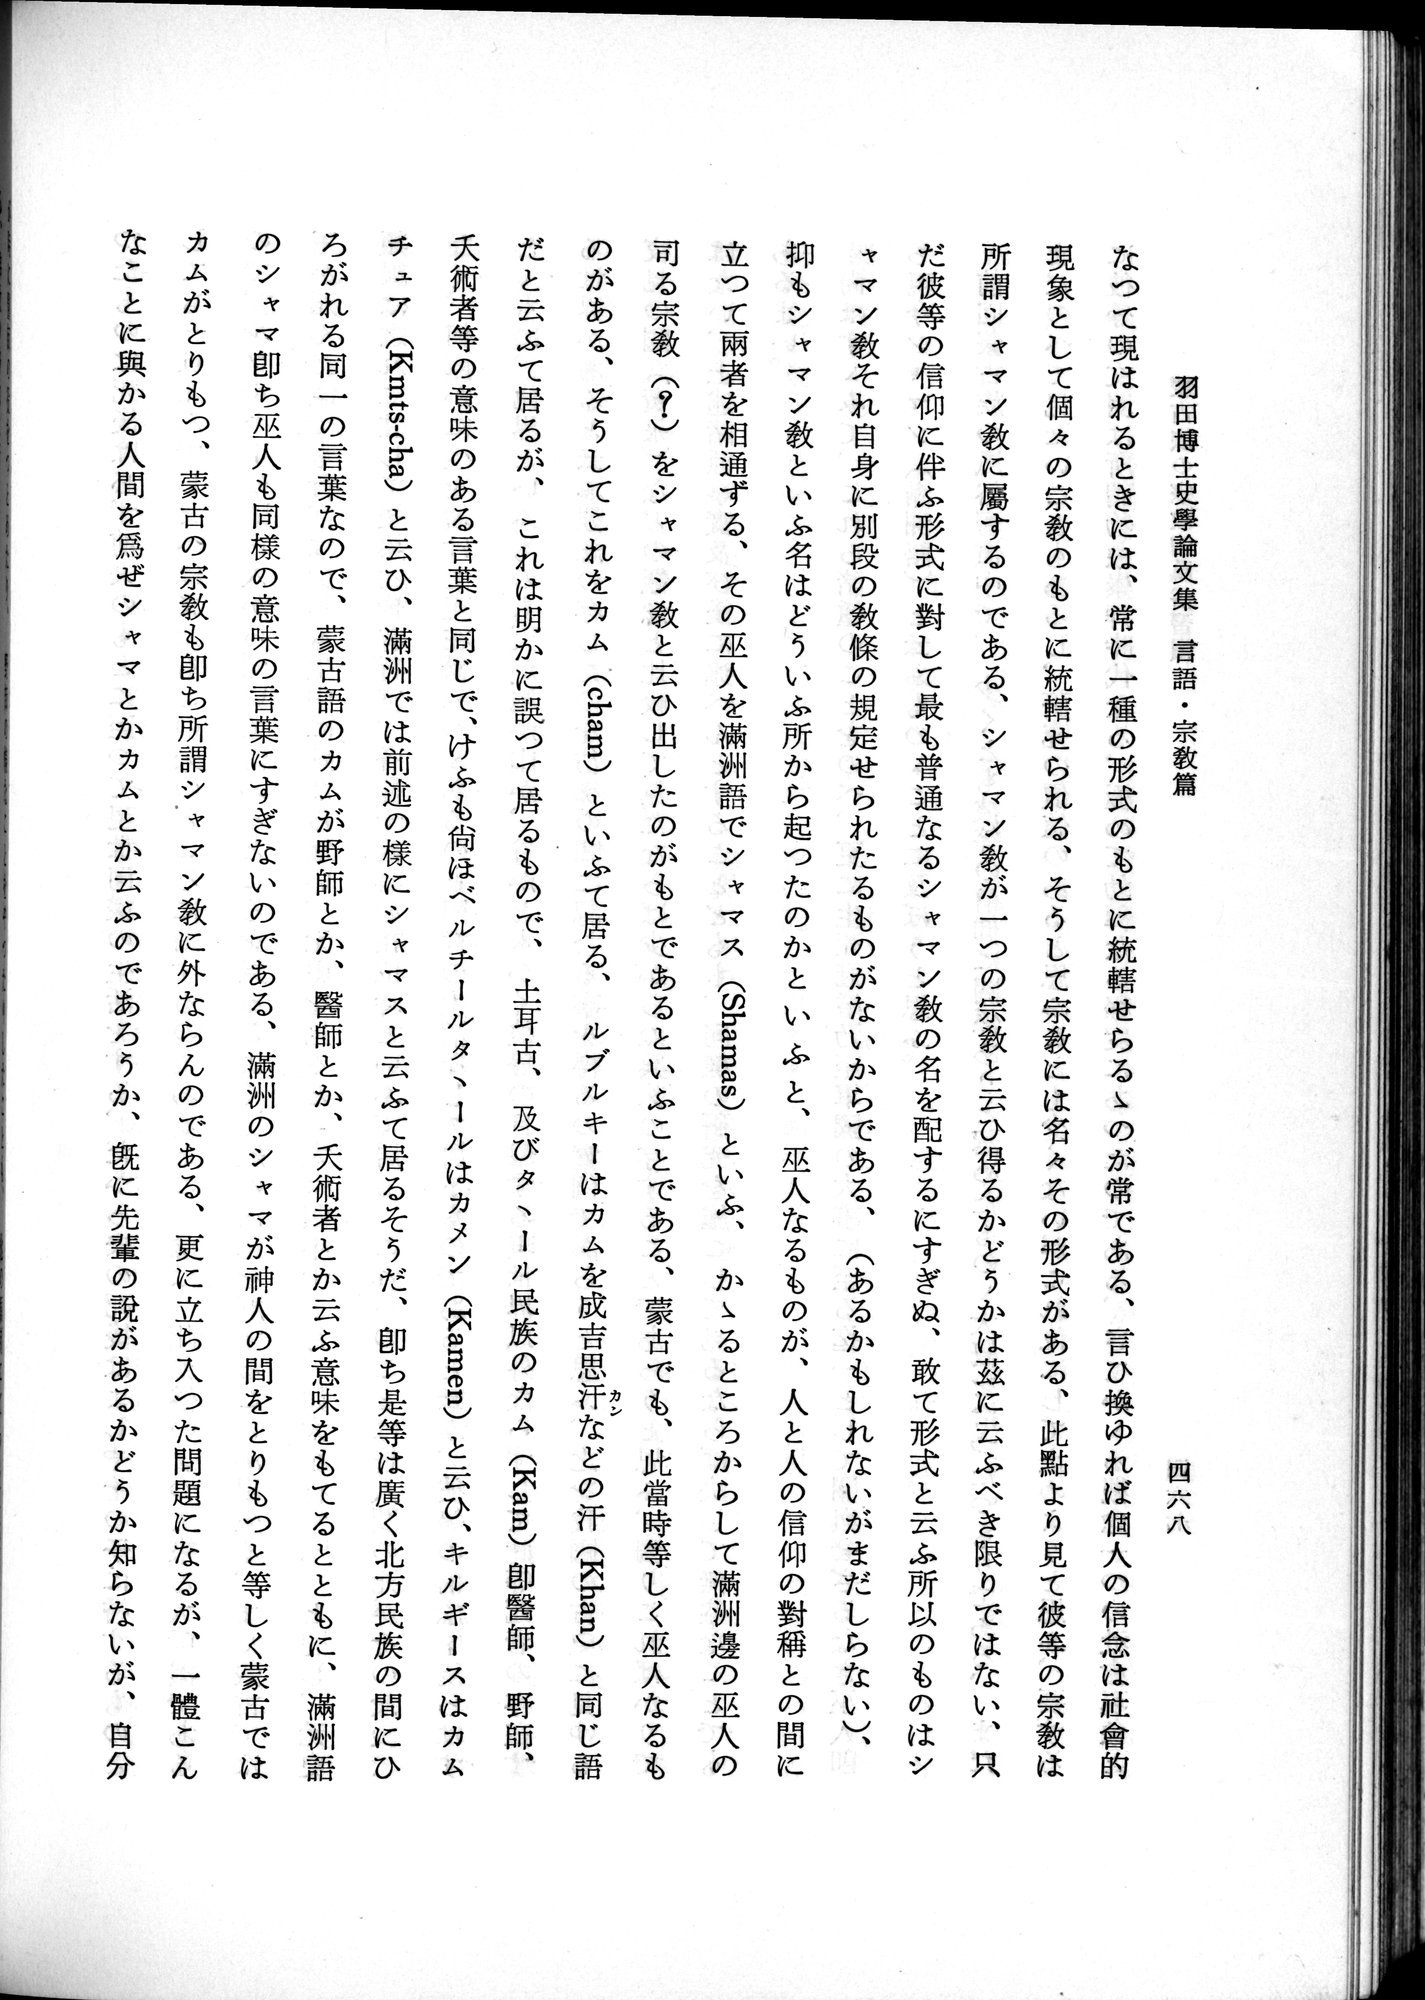 羽田博士史学論文集 : vol.2 / Page 530 (Grayscale High Resolution Image)